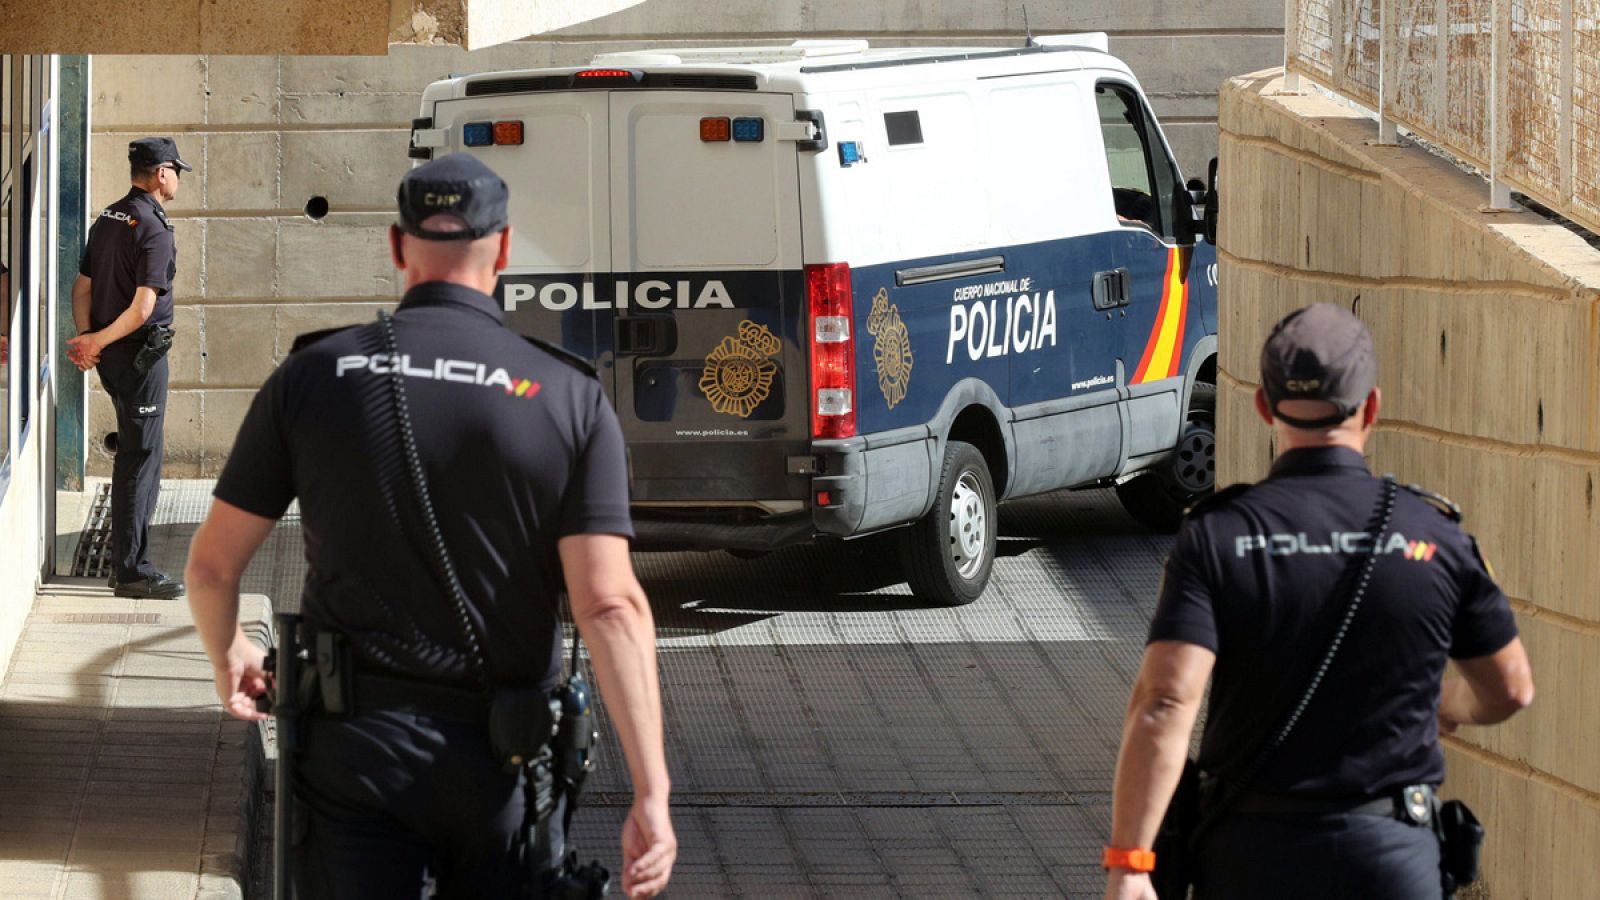 La Policía ha puesto a disposición del juzgado de guardia de San Bartolomé de Tirajana (Gran Canaria) a los cuatro adultos acusados de haber agredido sexualmente a una menor